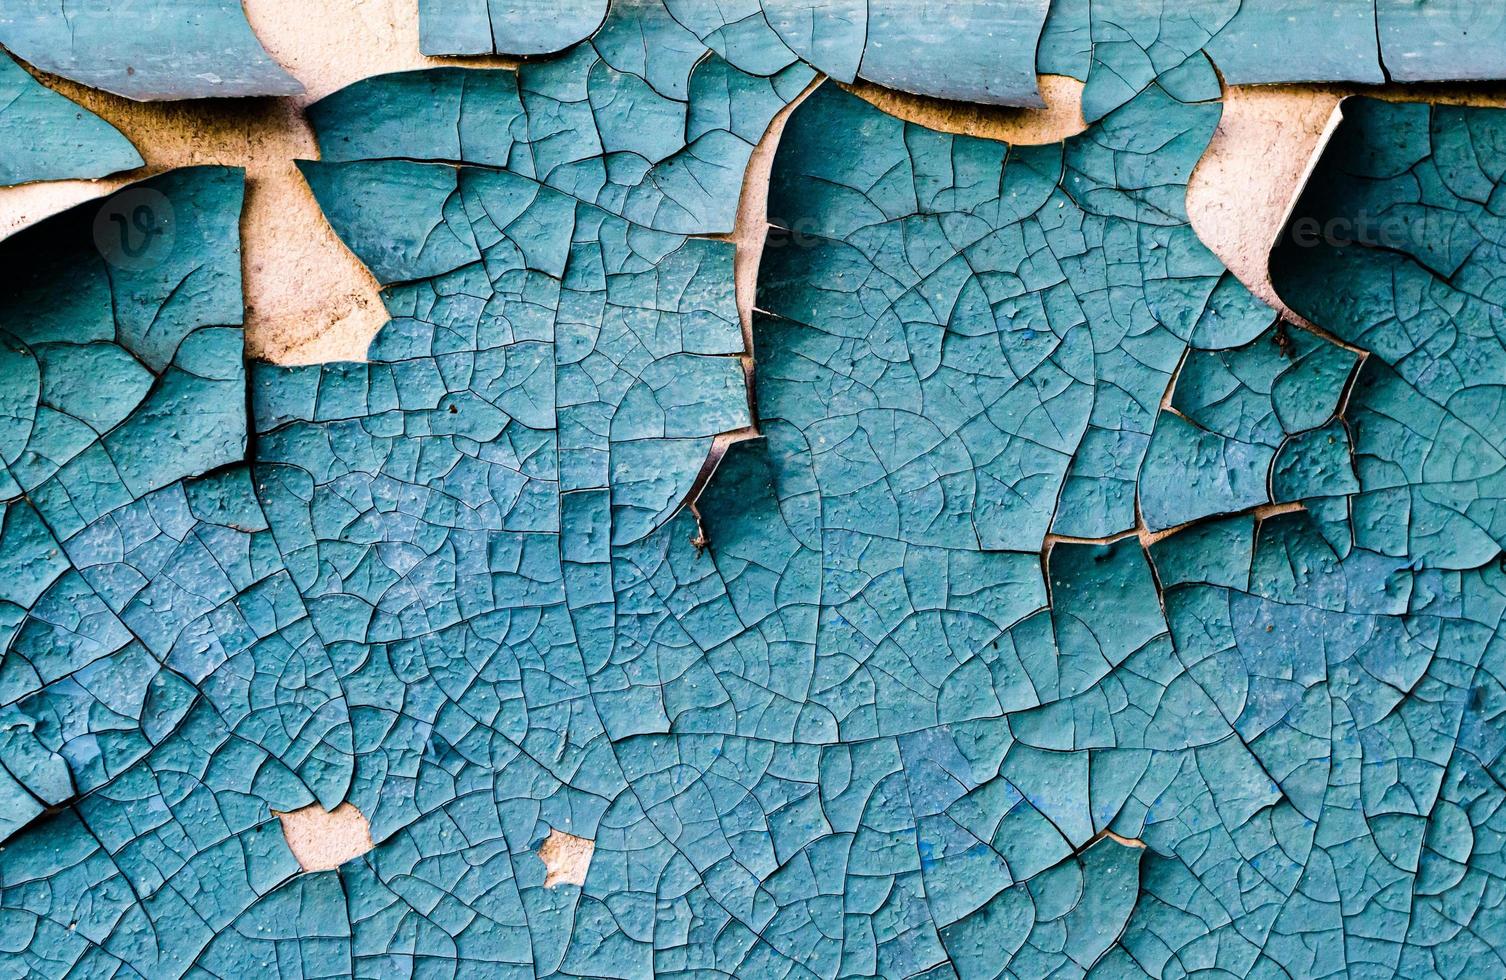 textura de pared con pintura azul descascarada agrietada foto